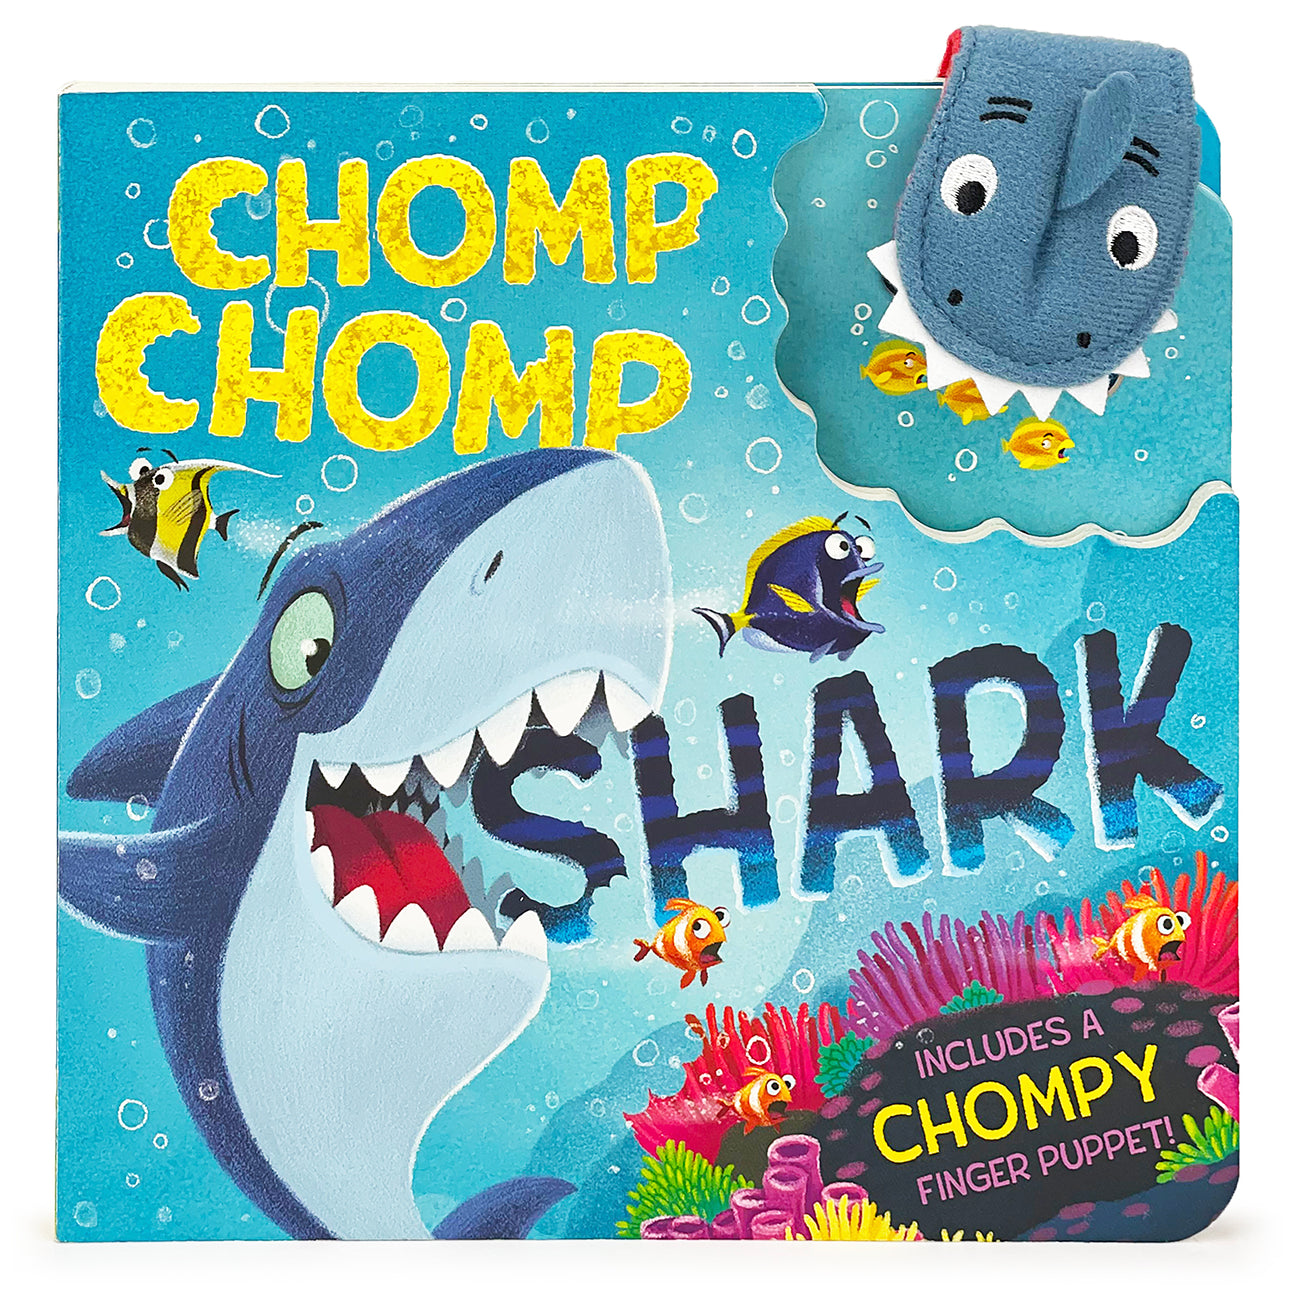 Chomp Chomp Shark Puppet Book